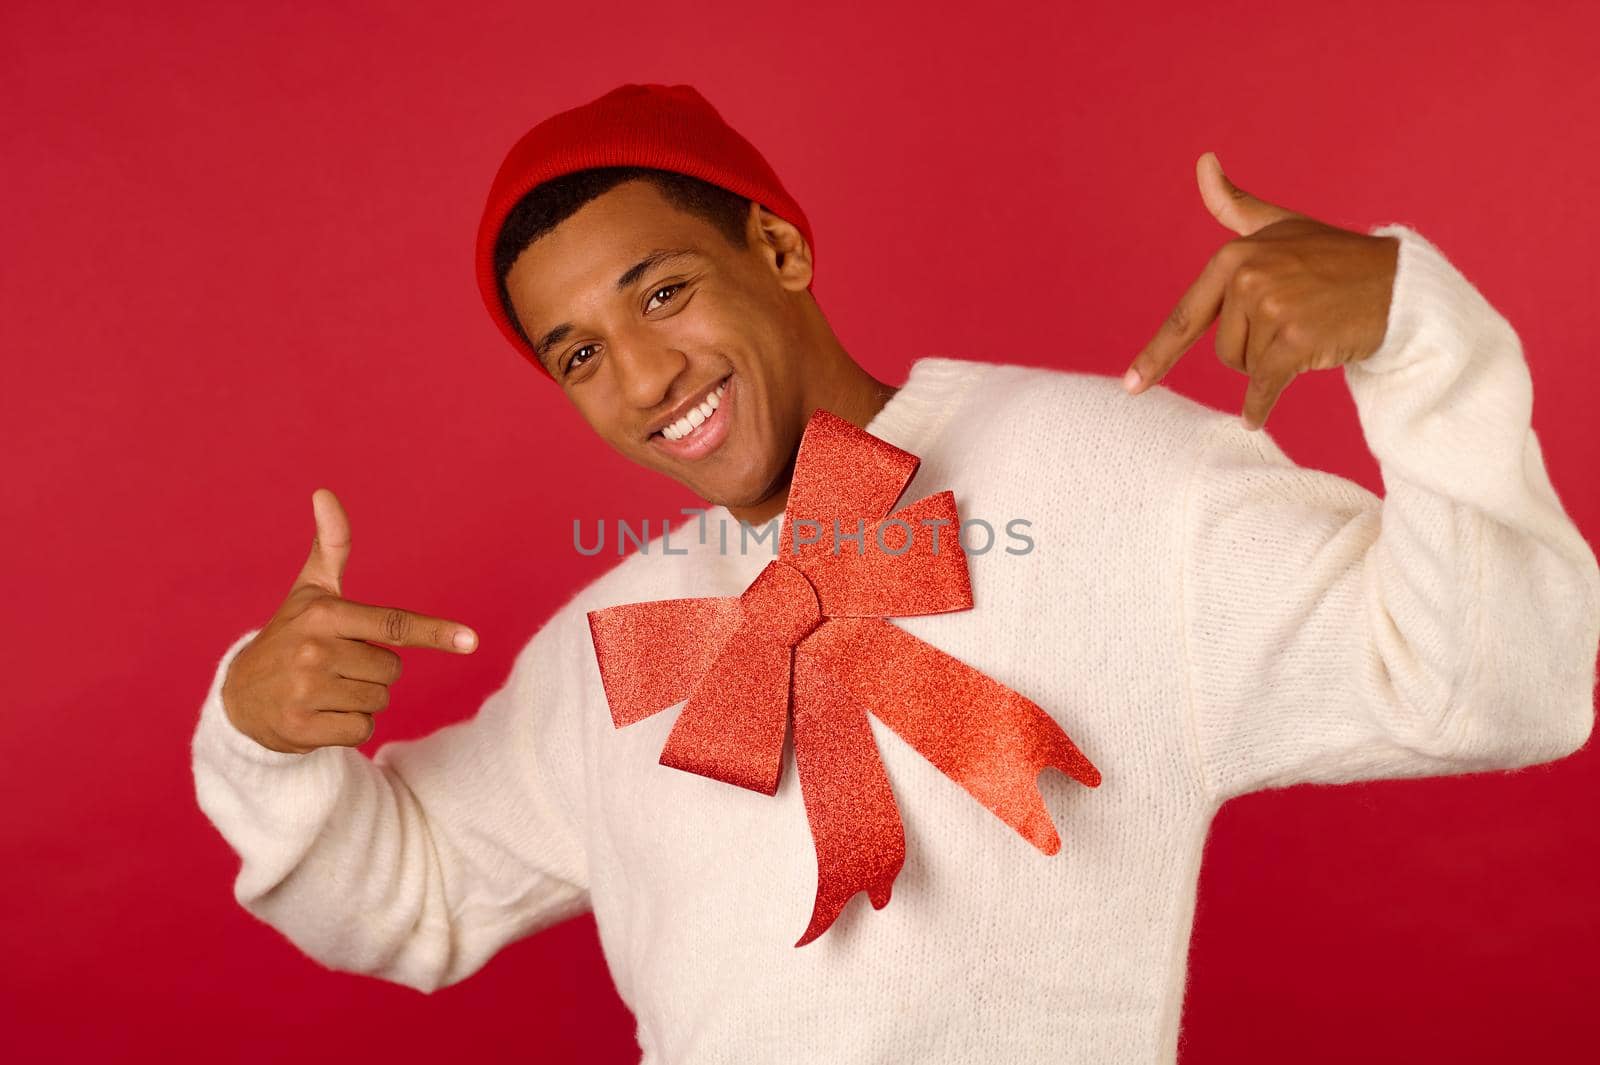 Festive mood. A young dark-skinned man in santa hat feeling joyous